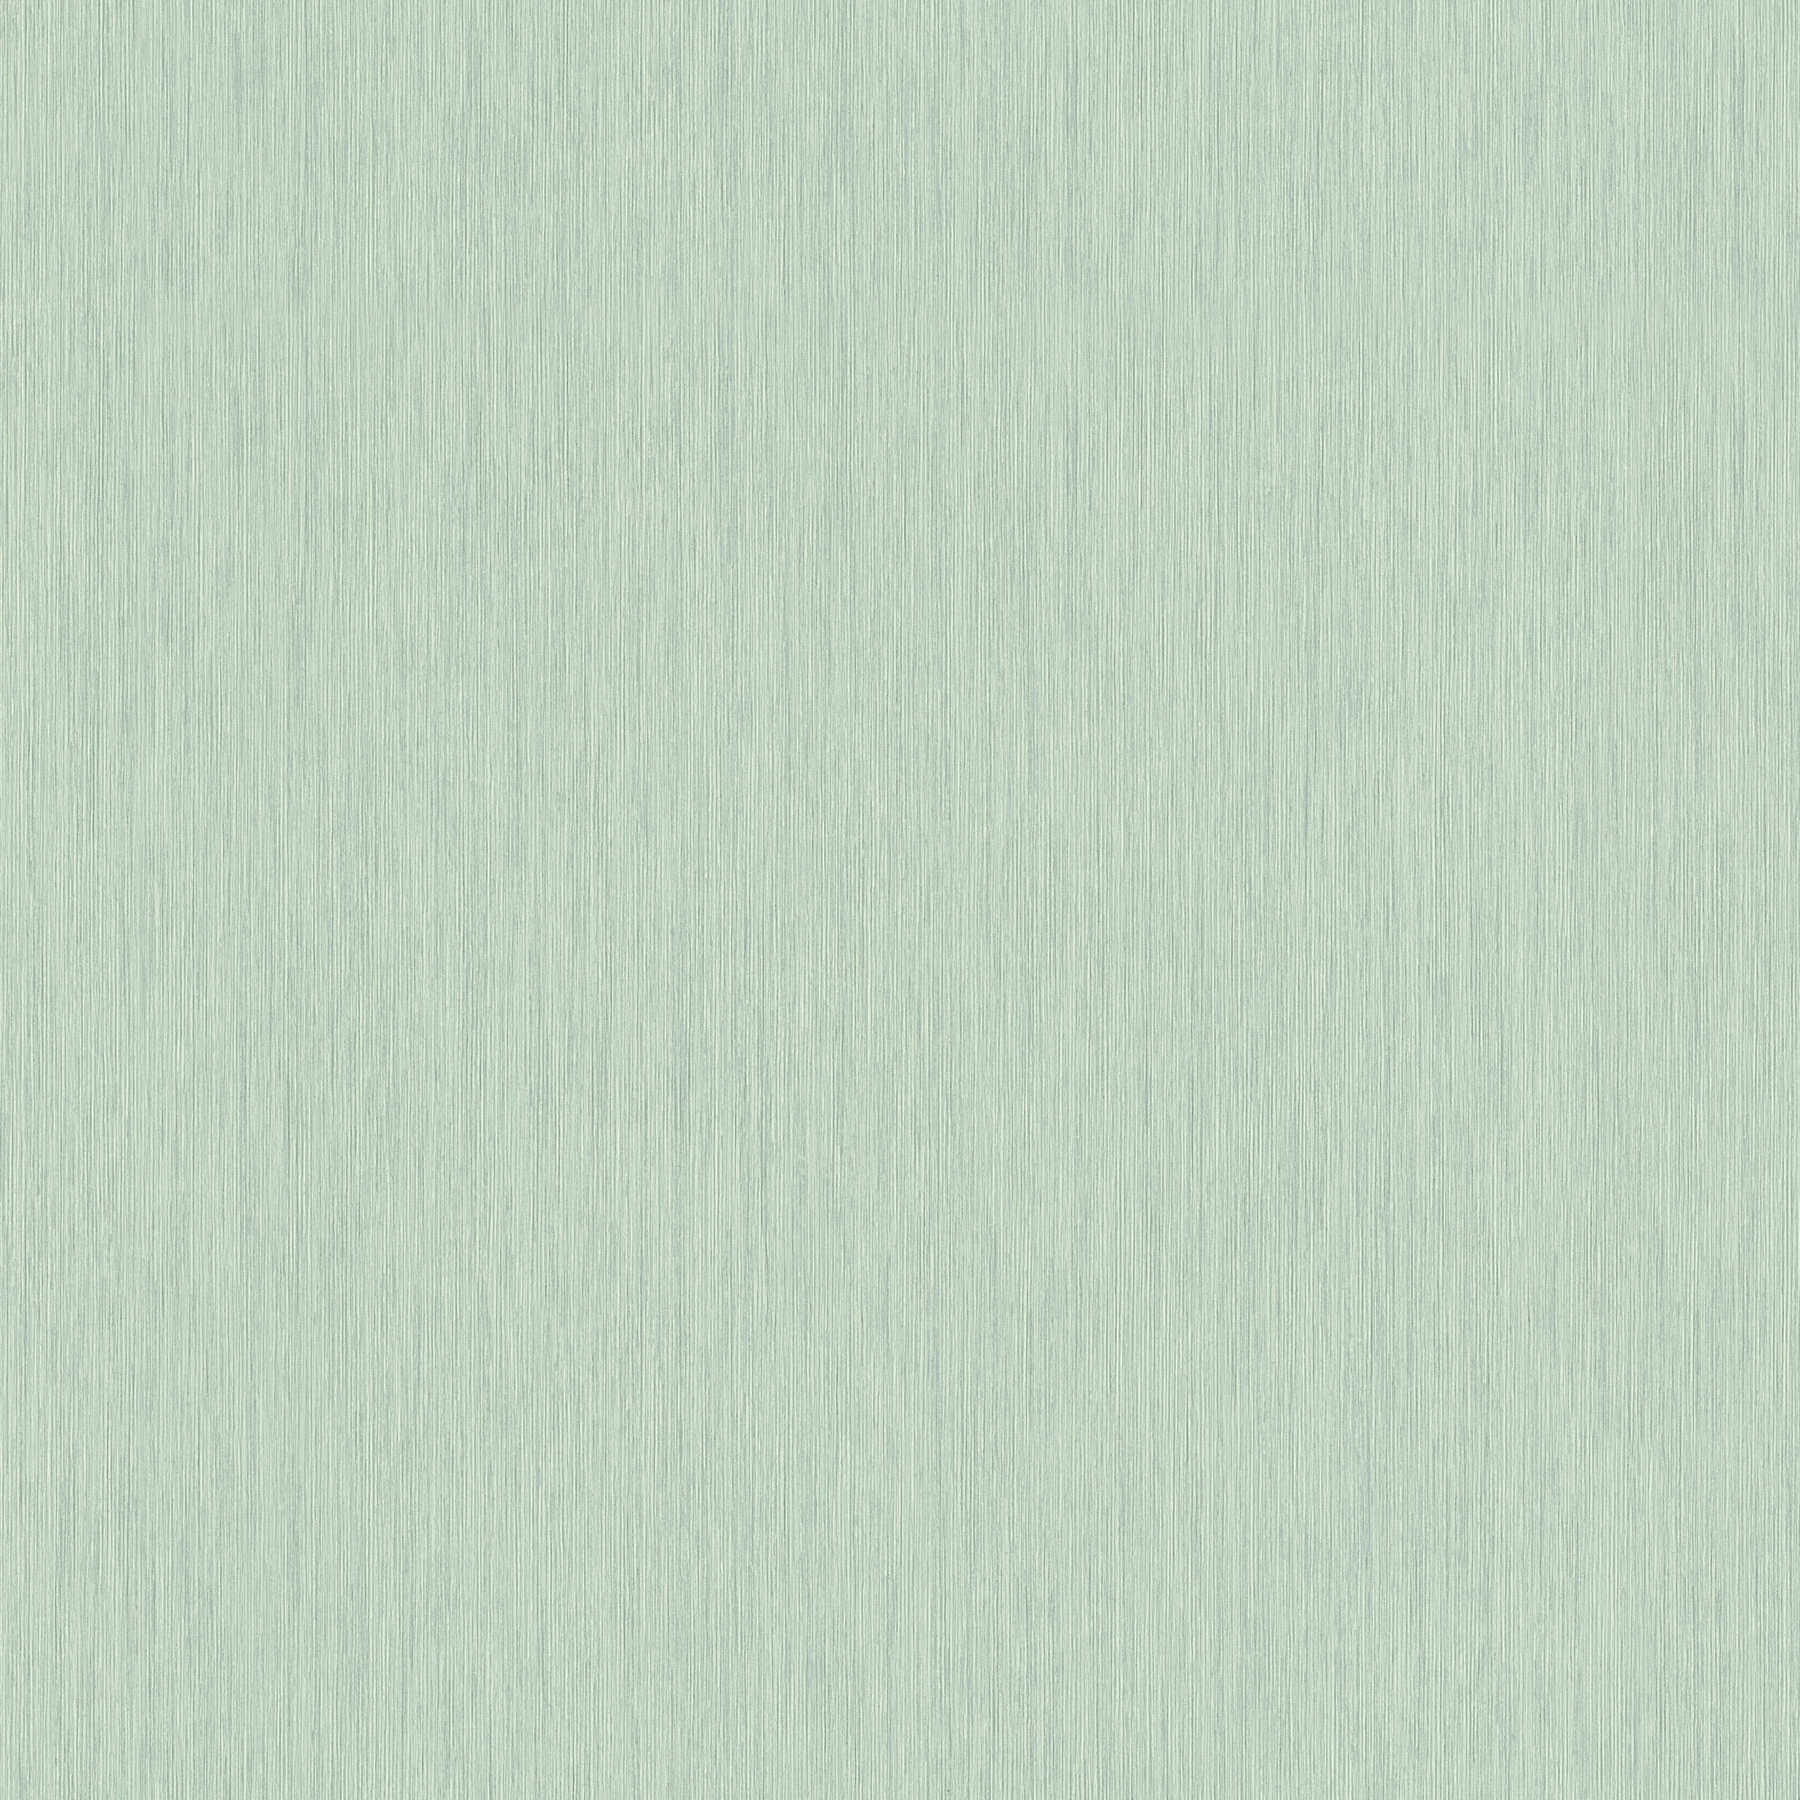 Hellgrüne Tapete meliert, matt mit linierter Strukturprägung
